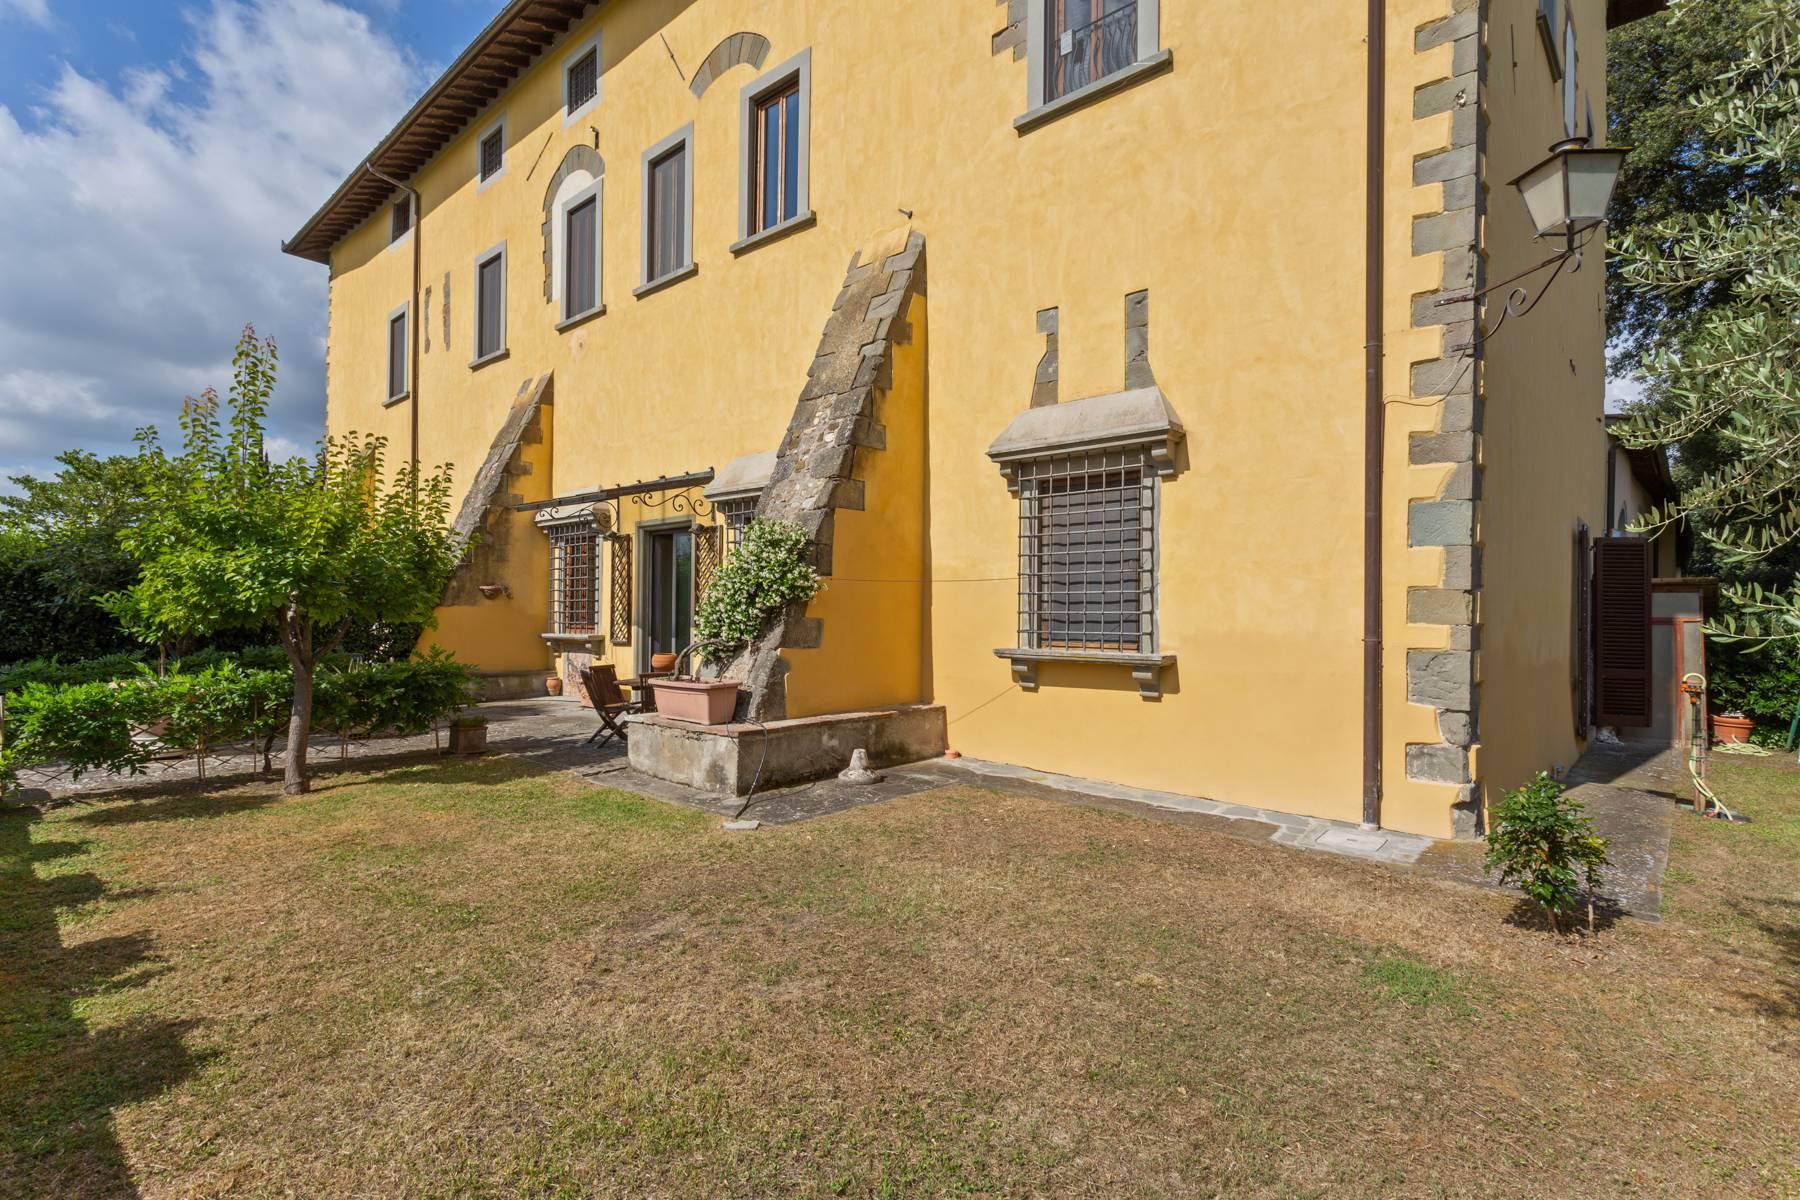 Magnifique appartement dans villa historique du XVI siècle avec jardin - 3